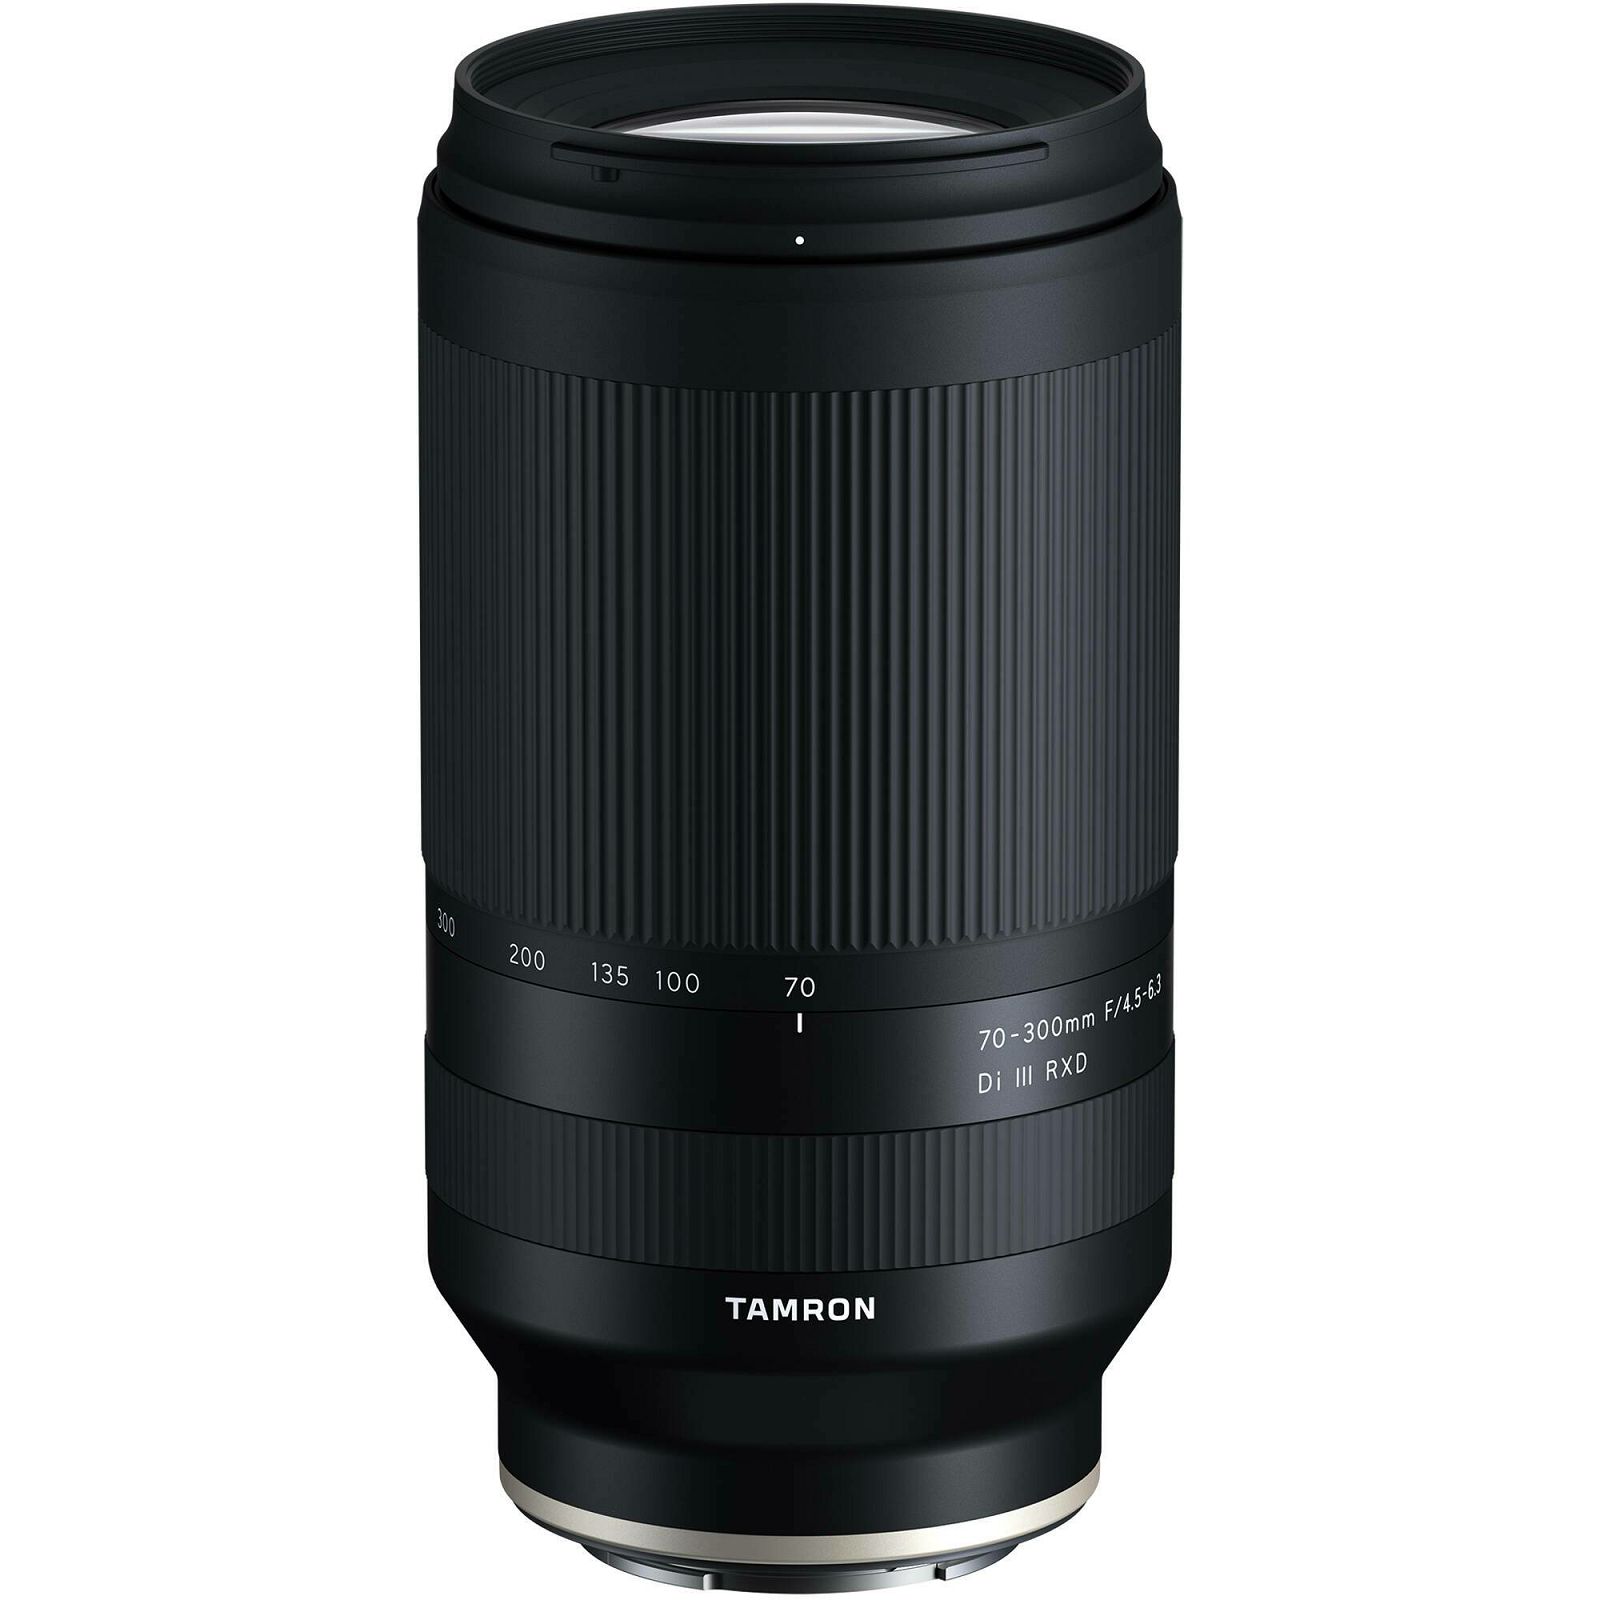 Tamron 70-300mm f/4.5-6.3 Di III RXD telefoto objektiv za Sony E-mount (A047SF)